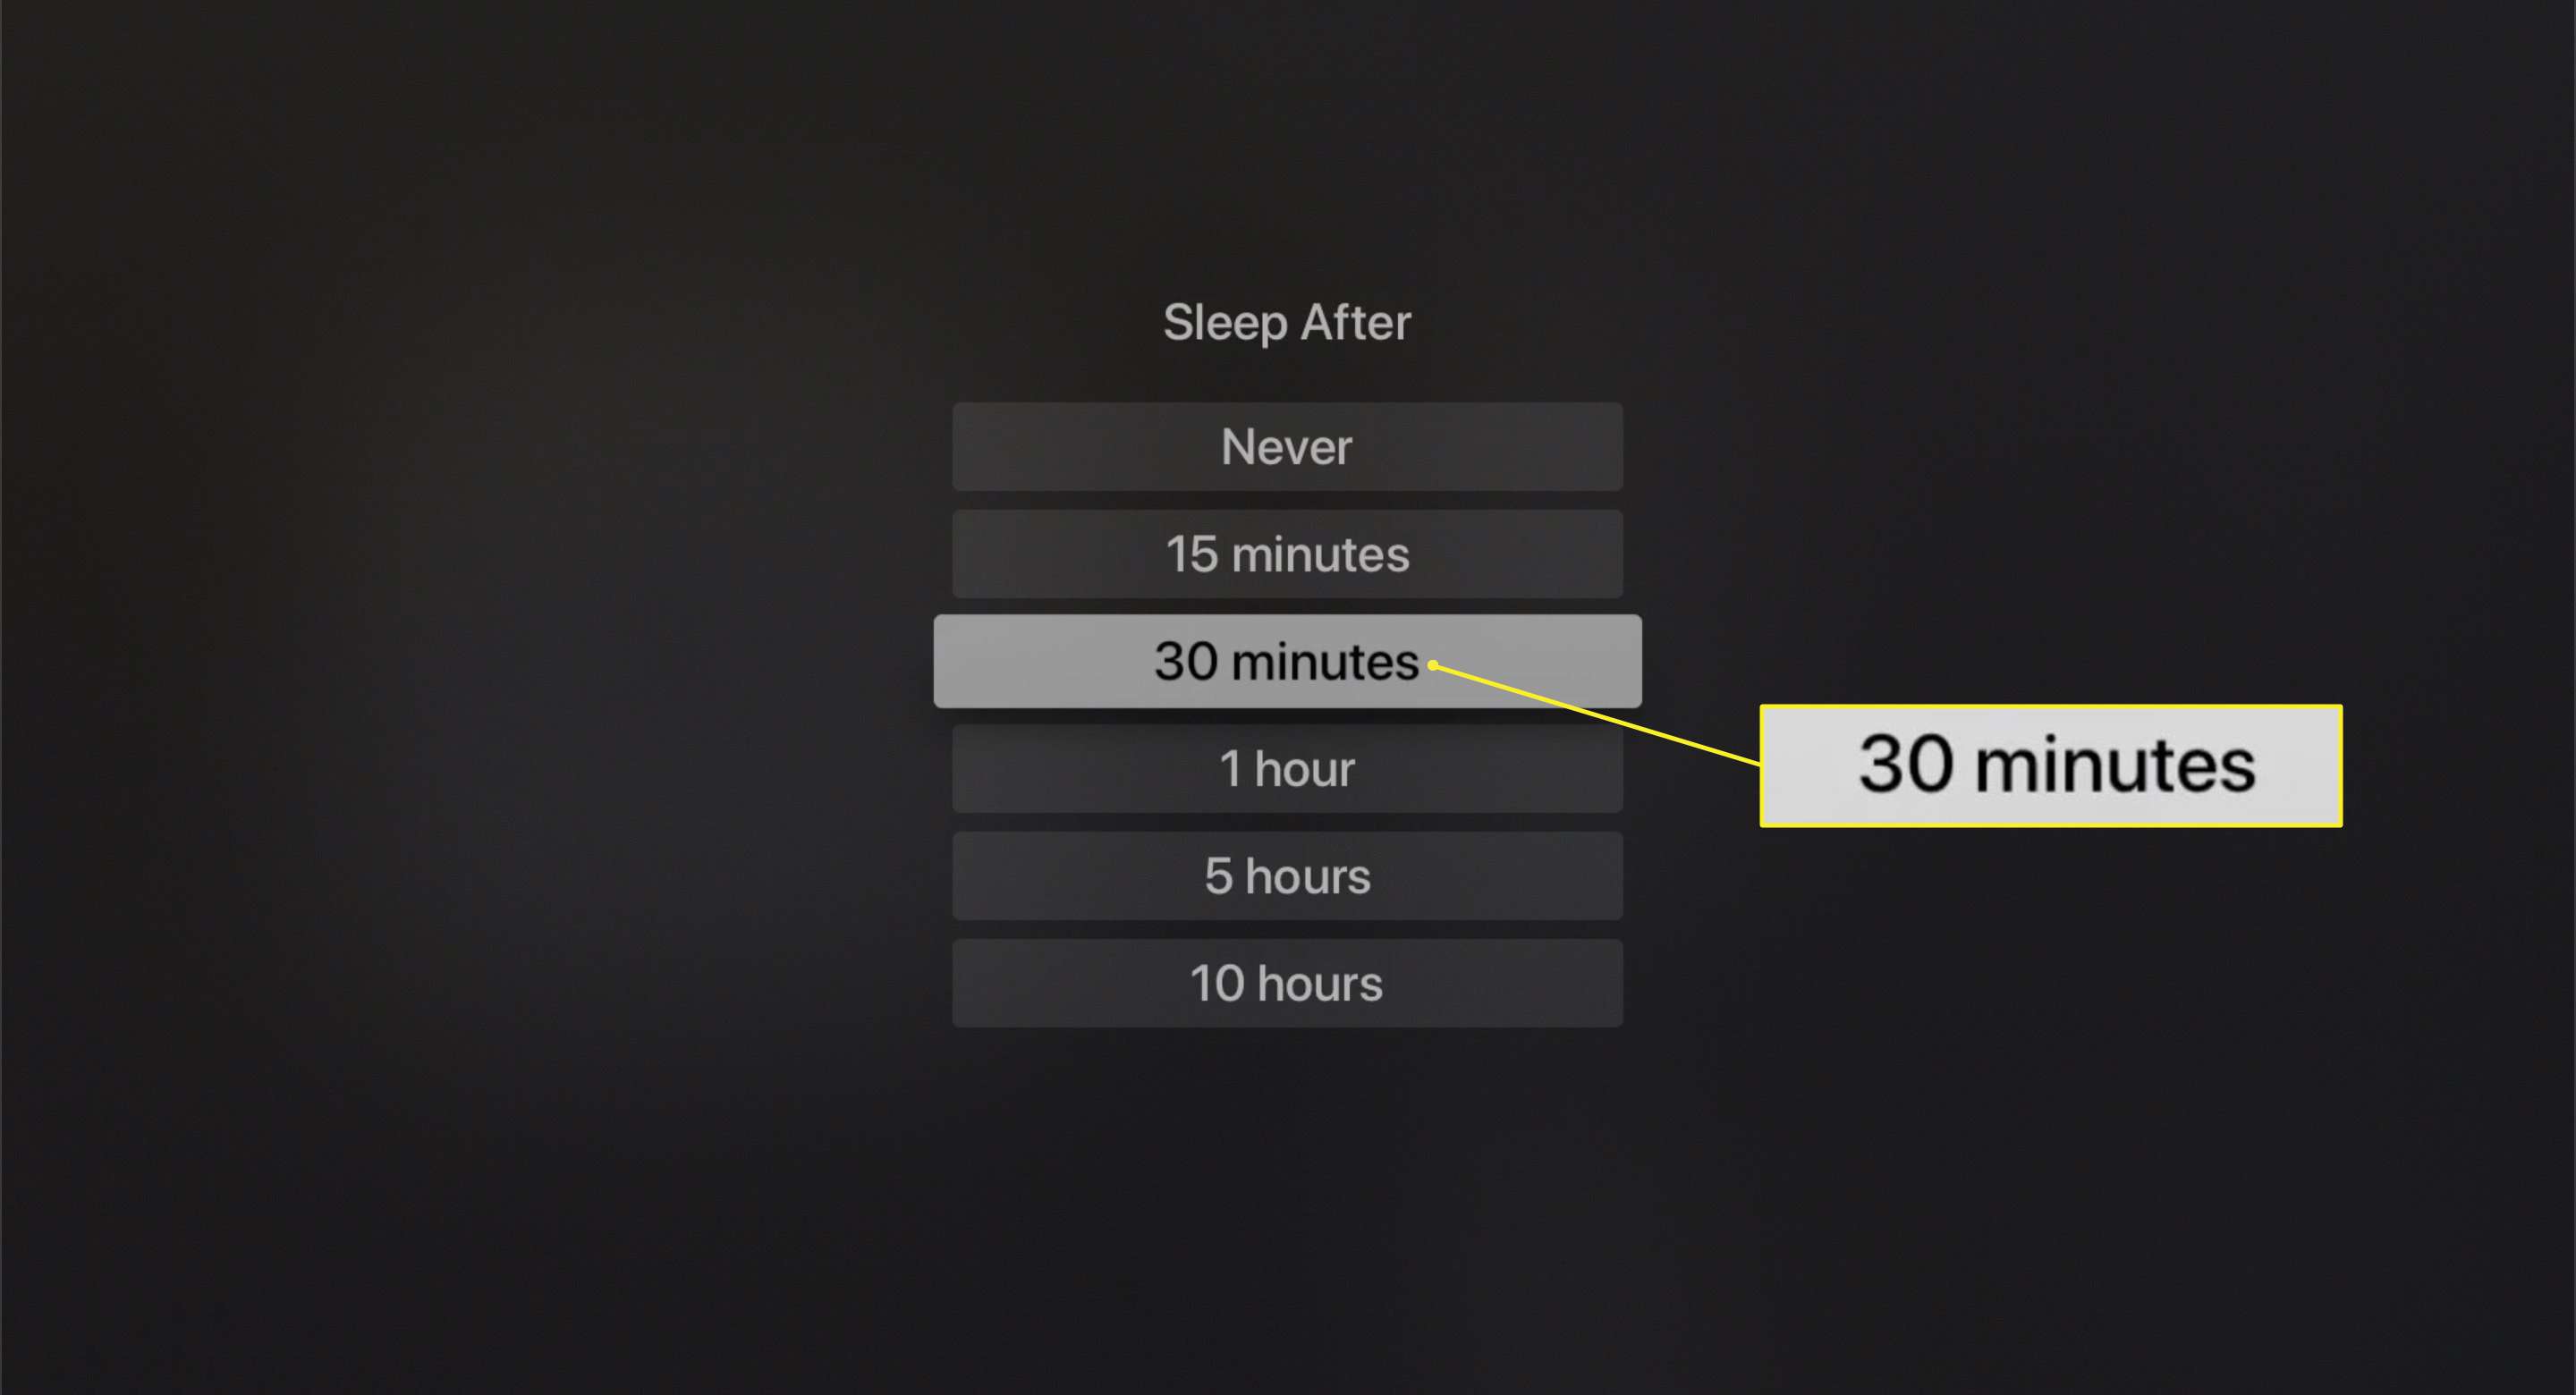 Sleep After-alternativ med 30 minuter markerade